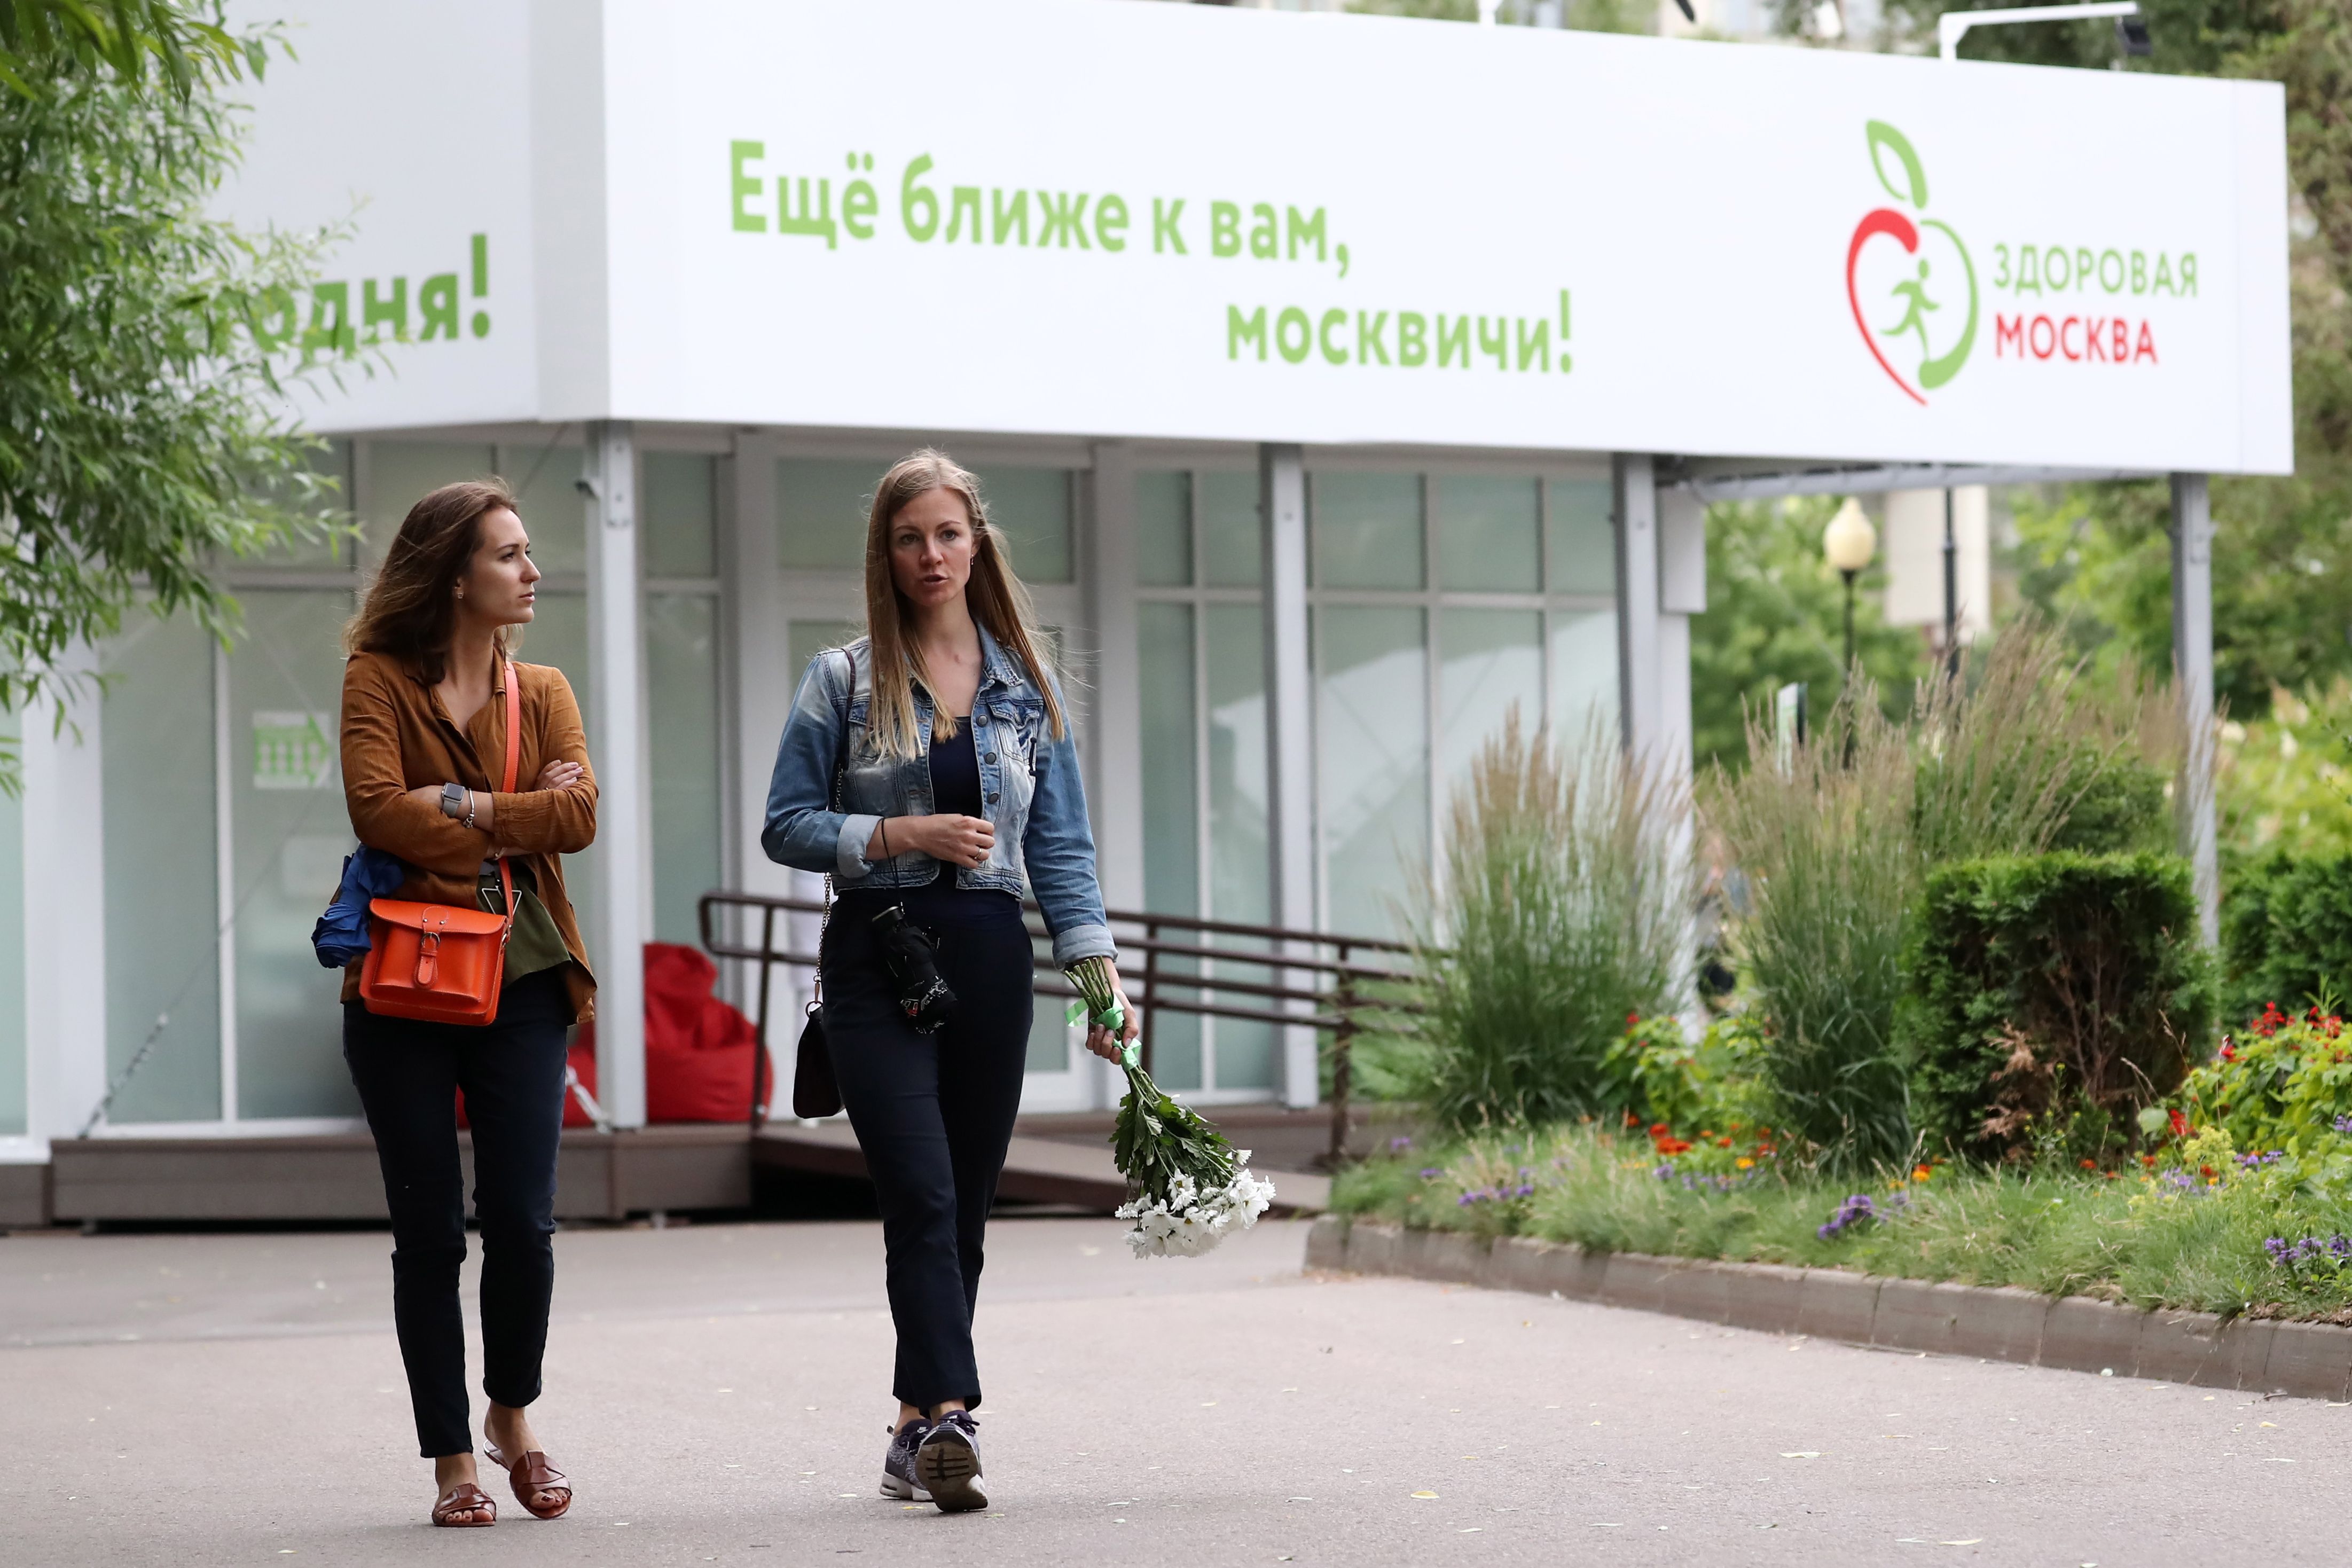 Более 150 тысяч раз жители столицы посетили бесплатные занятия на площадках проекта «Здоровая Москва». Фото: Антон Новодережкин / ТАСС